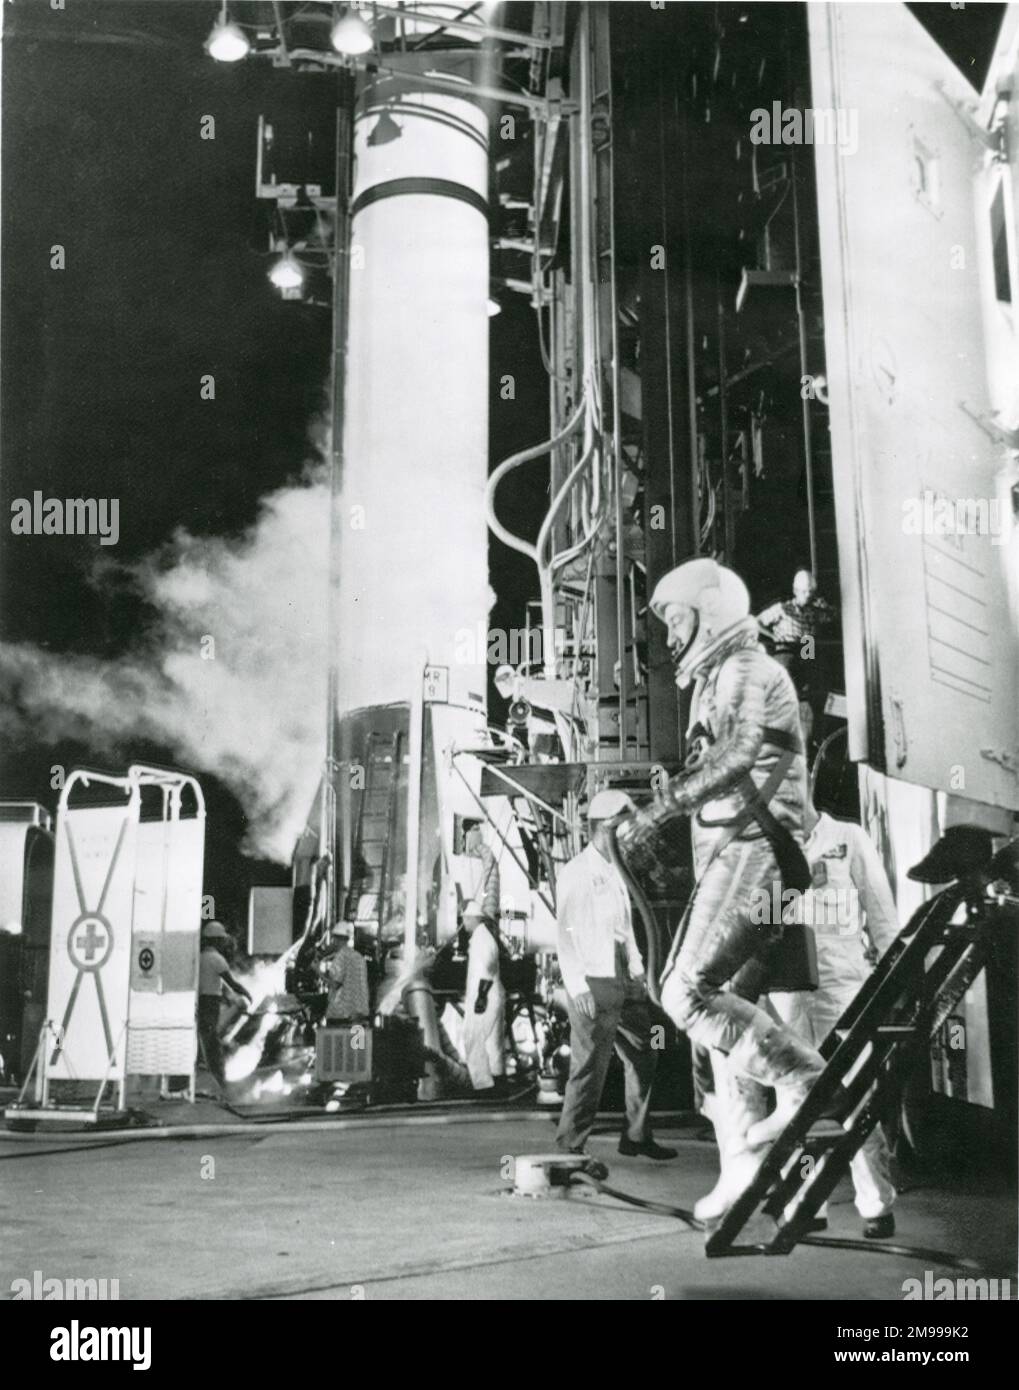 Astronaute Virgil ?Gus ? Grissom descend de la camionnette à Cape Canaveral pour une deuxième tentative de vol sub-orbital suite à l'annulation antérieure en raison de mauvais temps, 21 juillet 1961. Banque D'Images